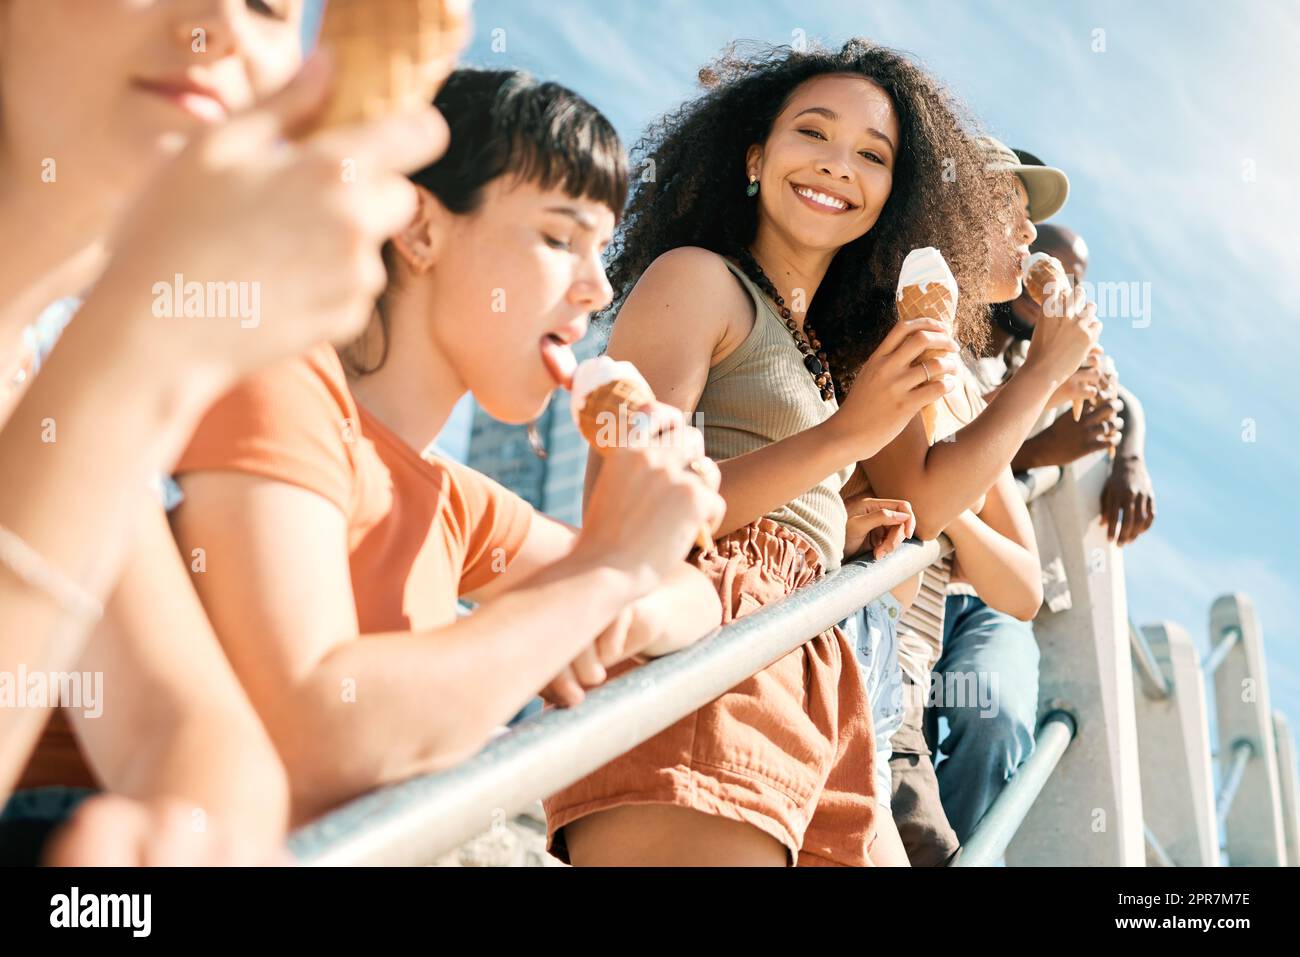 Der beste Tag aller Zeiten. Beschnittenes Porträt einer attraktiven jungen Frau, die mit ihren Freundinnen am Strand ein Eis genießt. Stockfoto